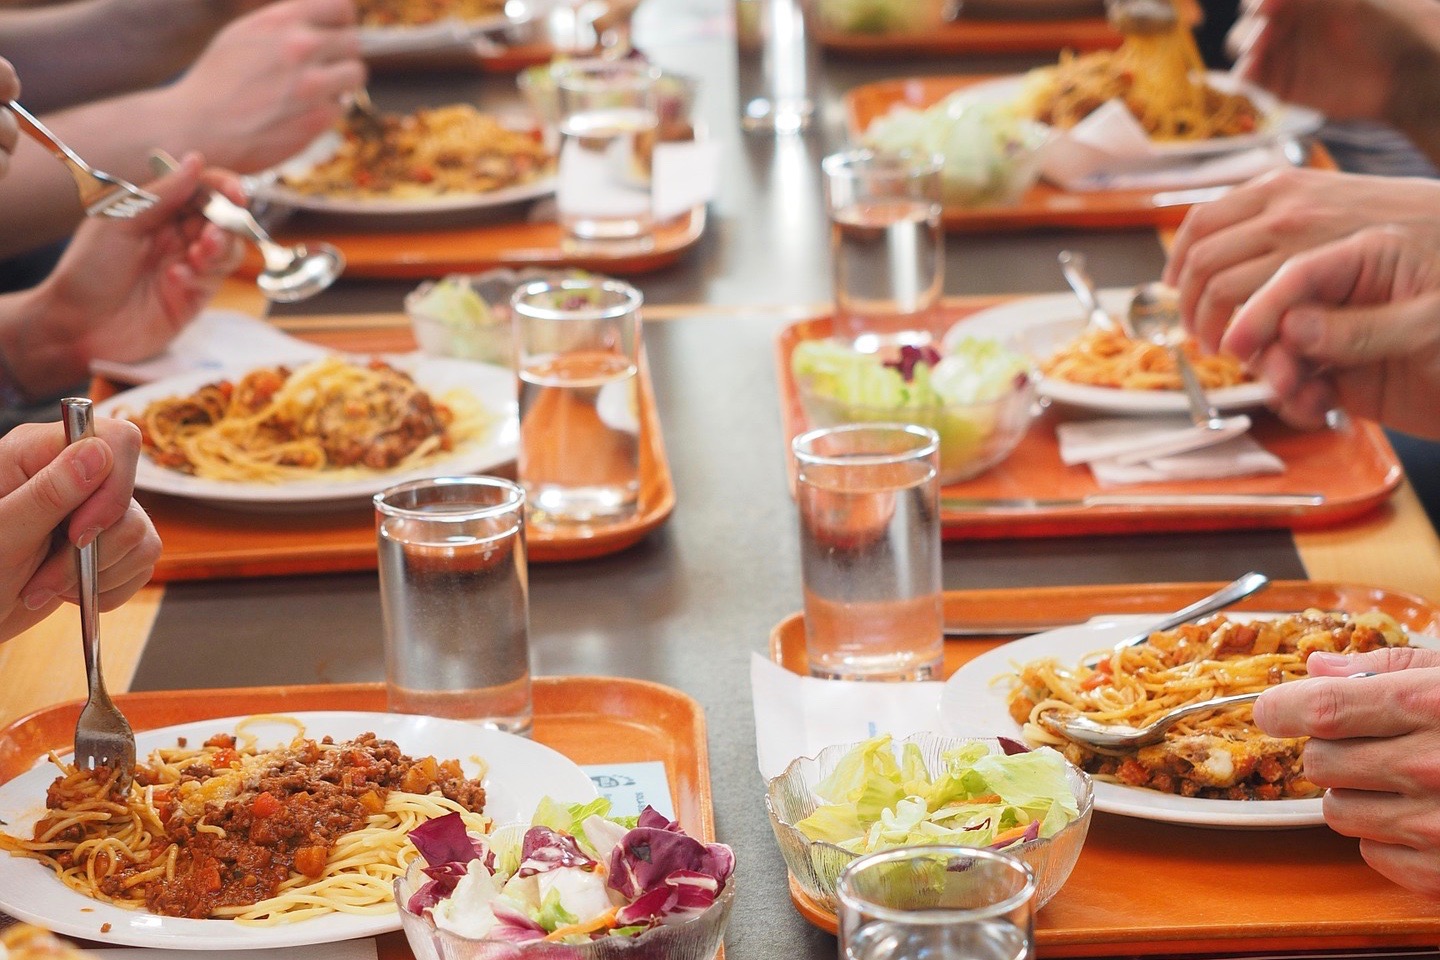   Ab durch die Mittagspause | Kantinen-Check: Diese öffentlichen Mittagstische können wir wärmstens empfehlen  